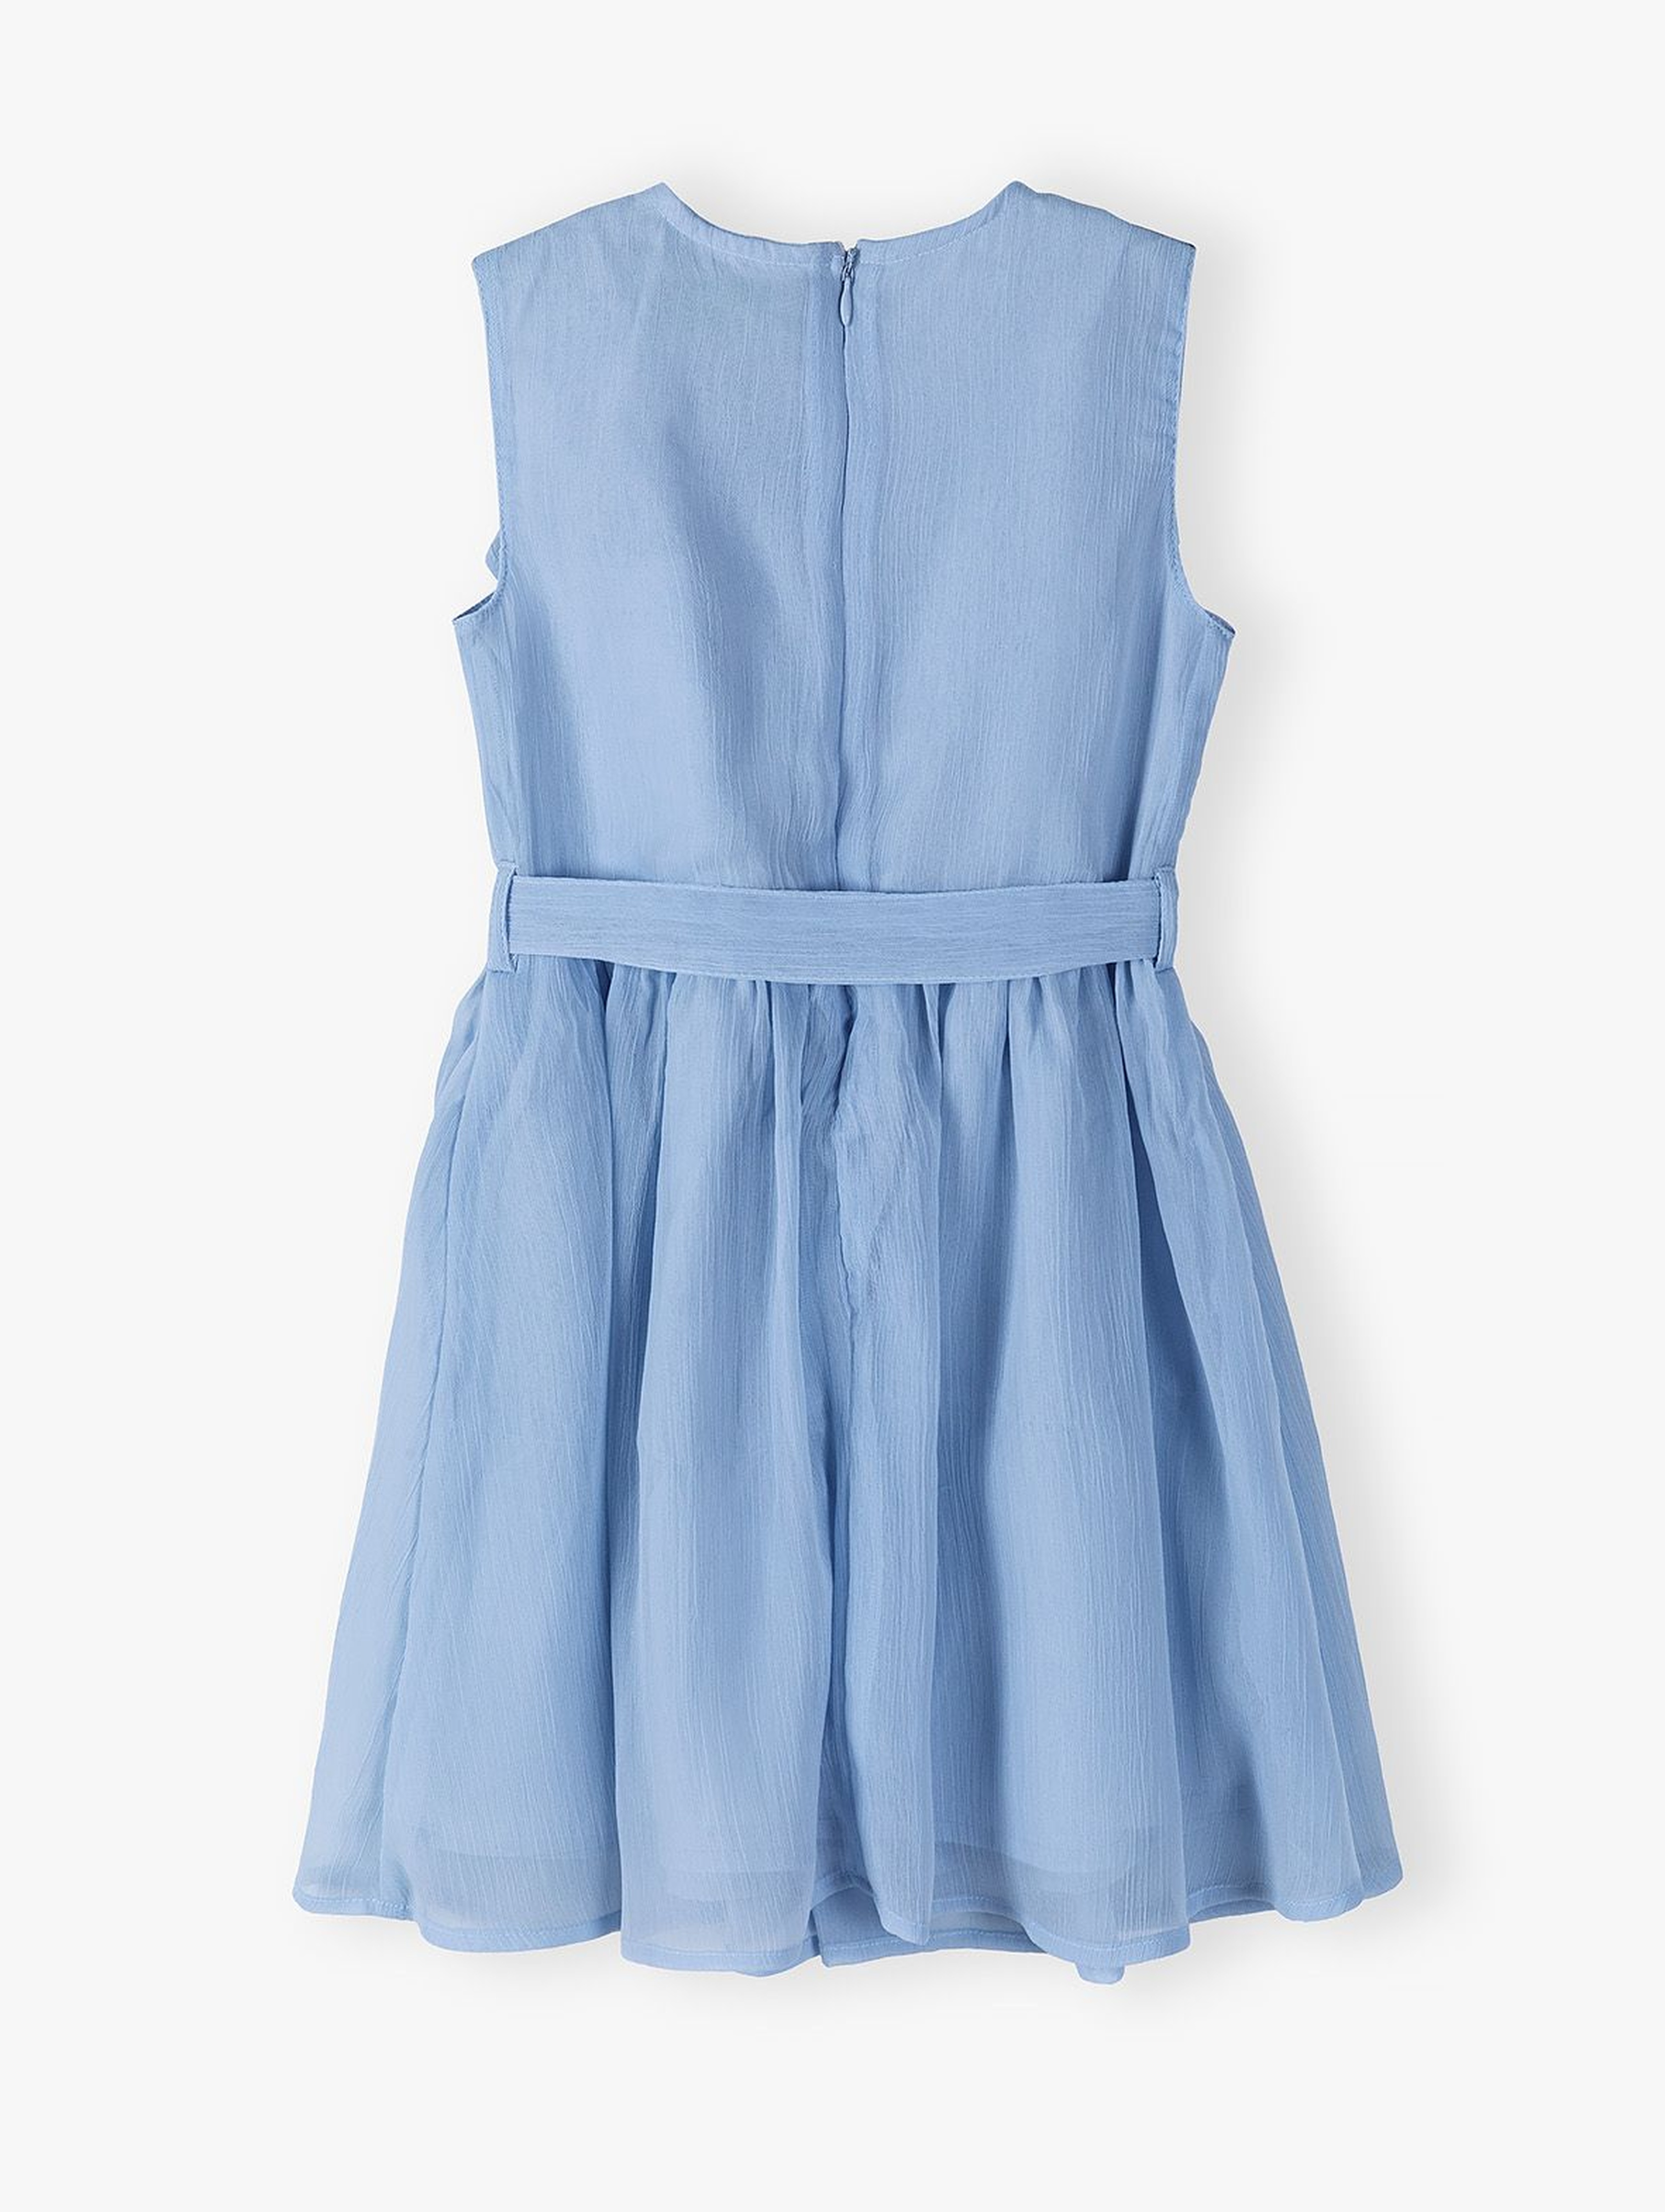 Tkaninowa sukienka dziewczęca - błękitna